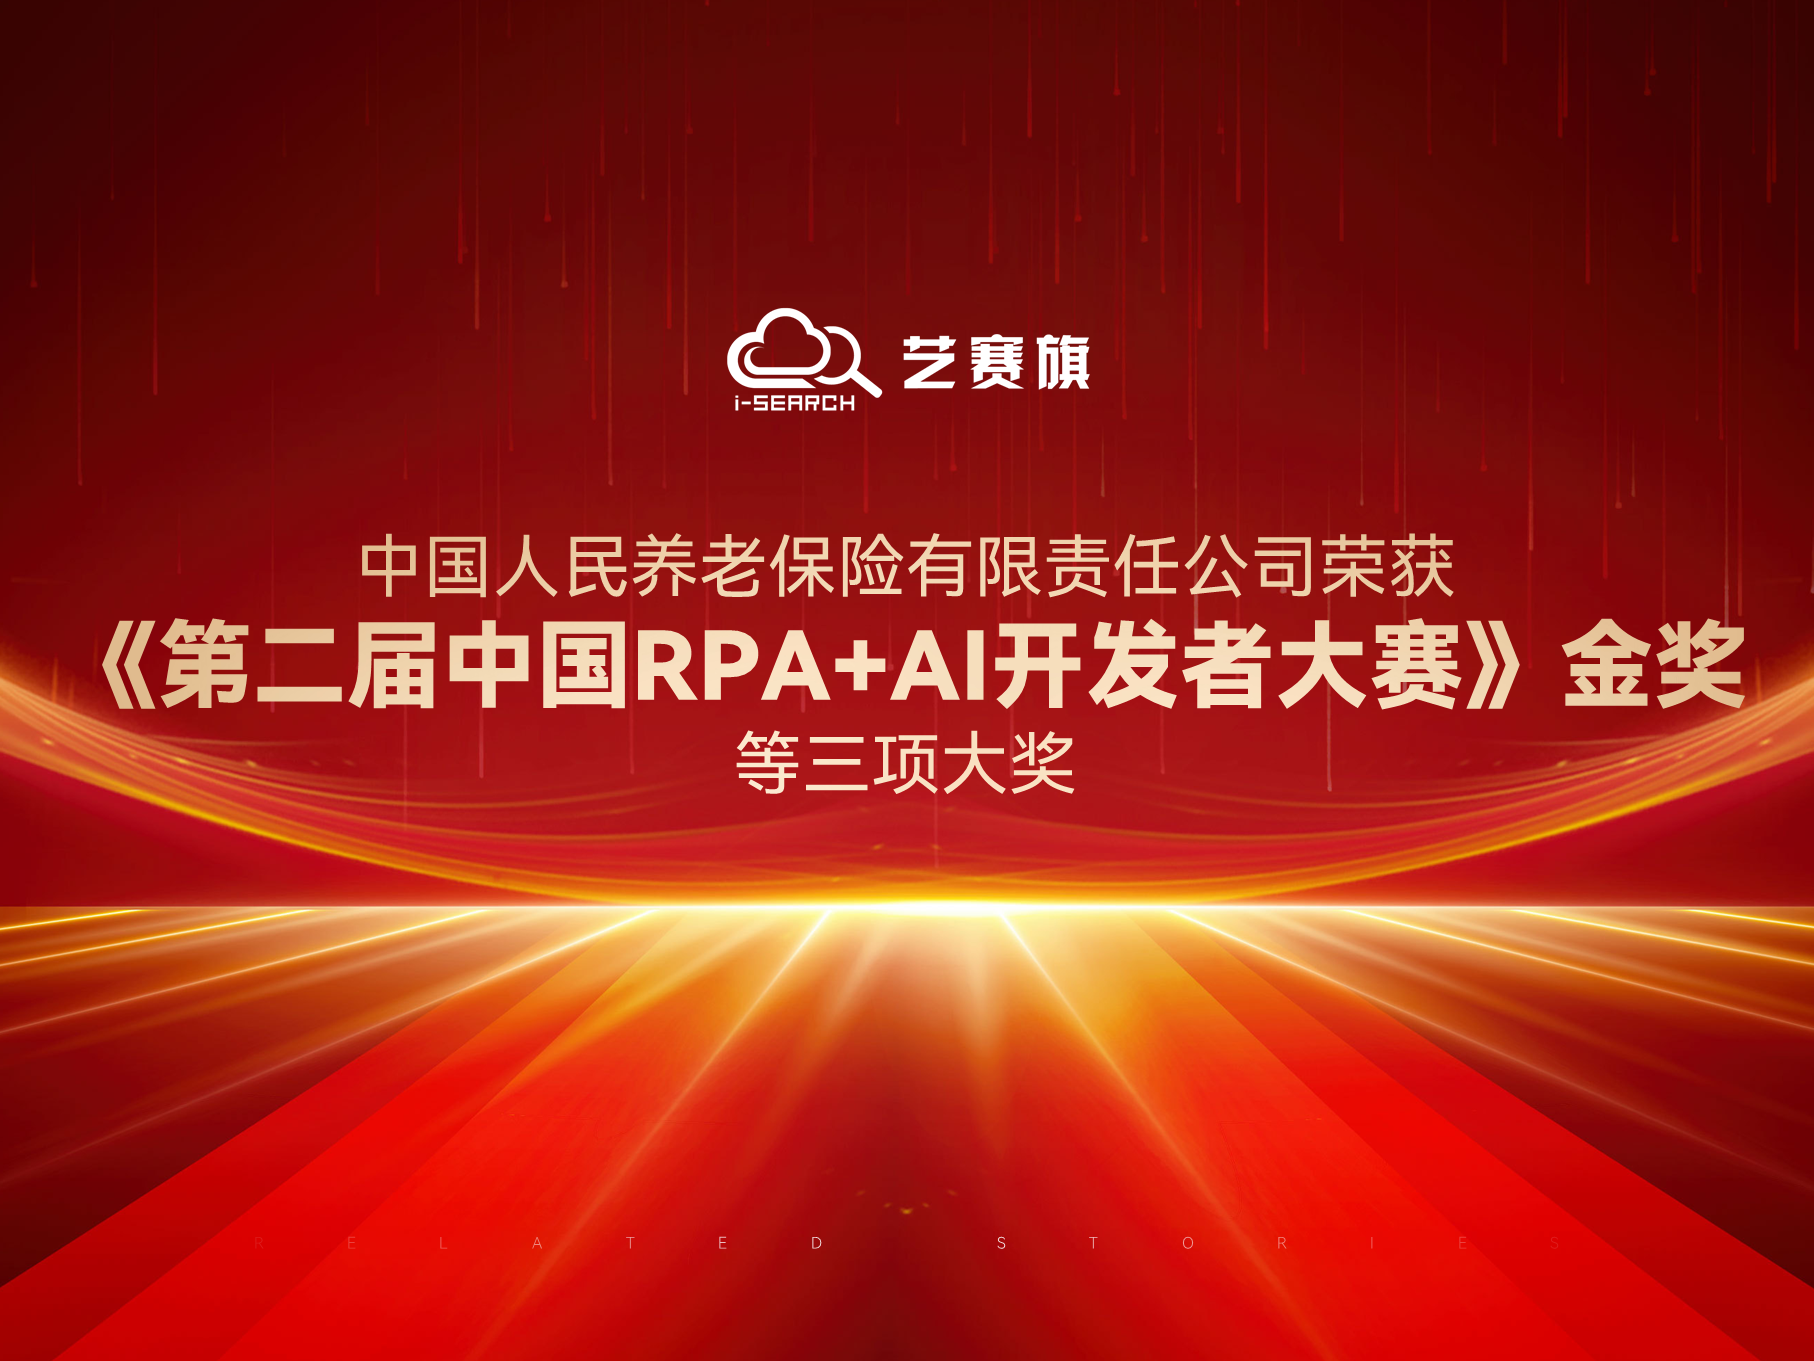 中国人民养老保险有限责任公司荣获“《第二届中国RPA+AI开发者大赛》金奖”等三项大奖。